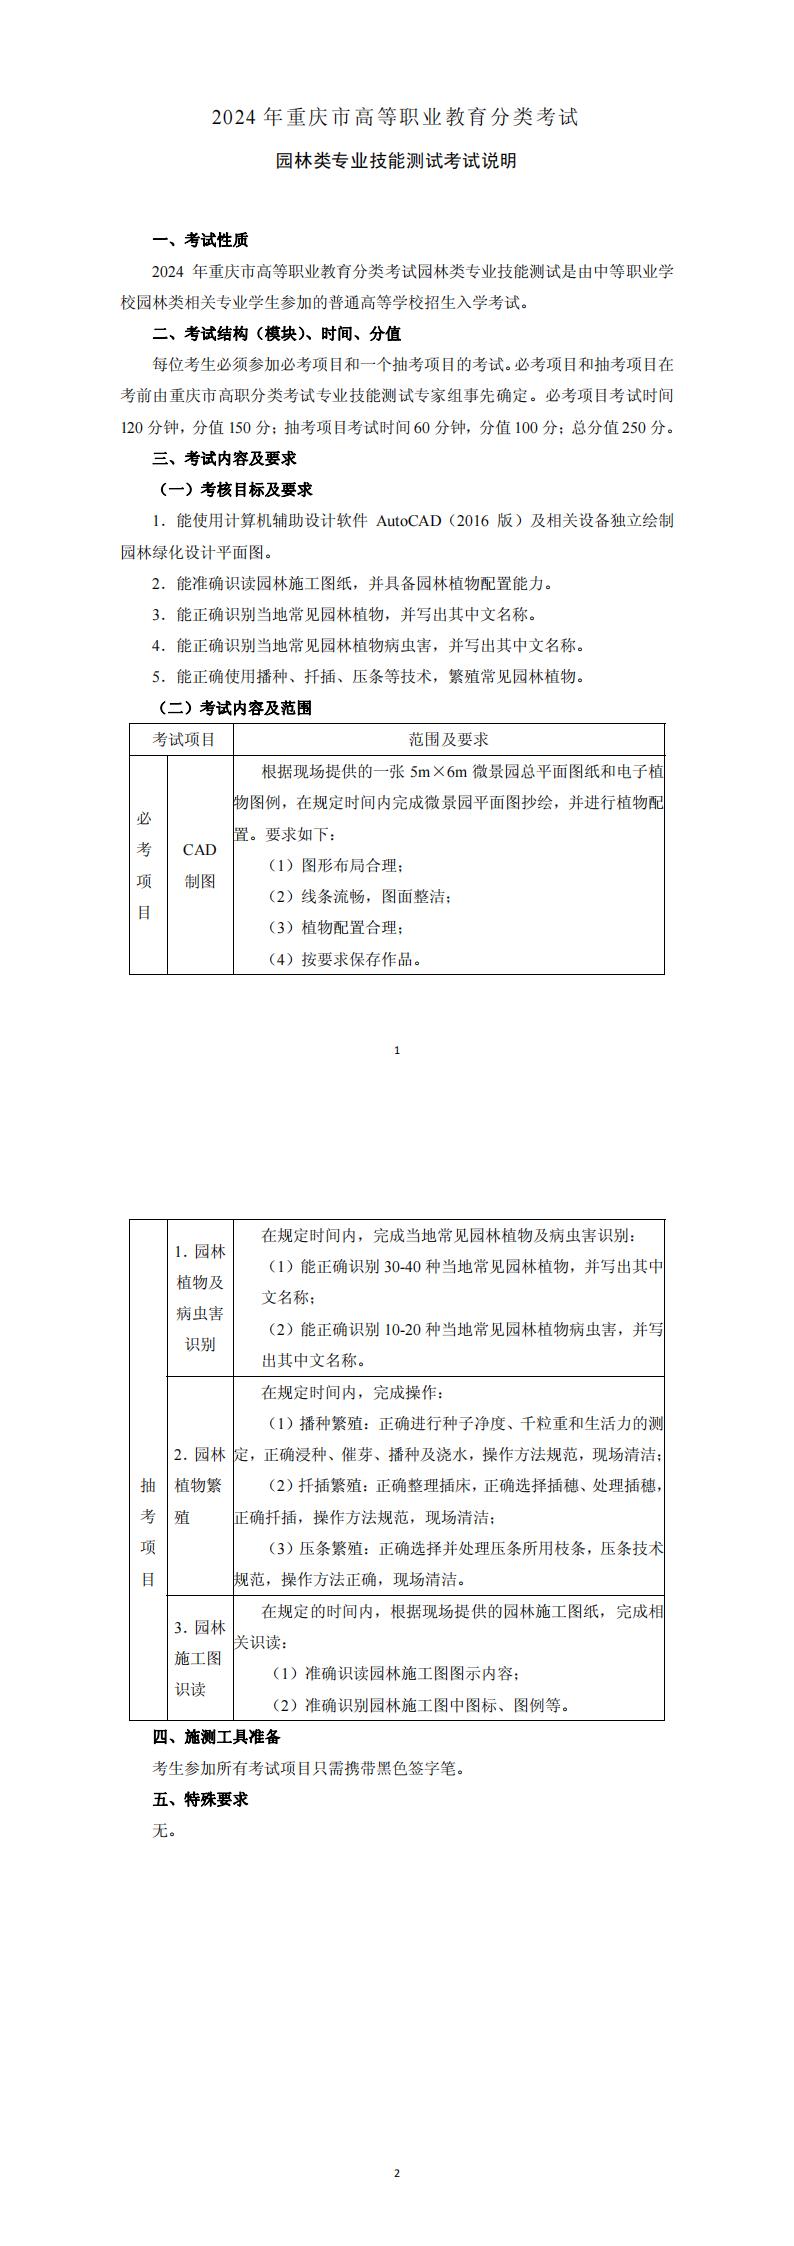 2024+年重庆市高等职业教育分类考试园林类专业技能测试考试说明_00.jpg